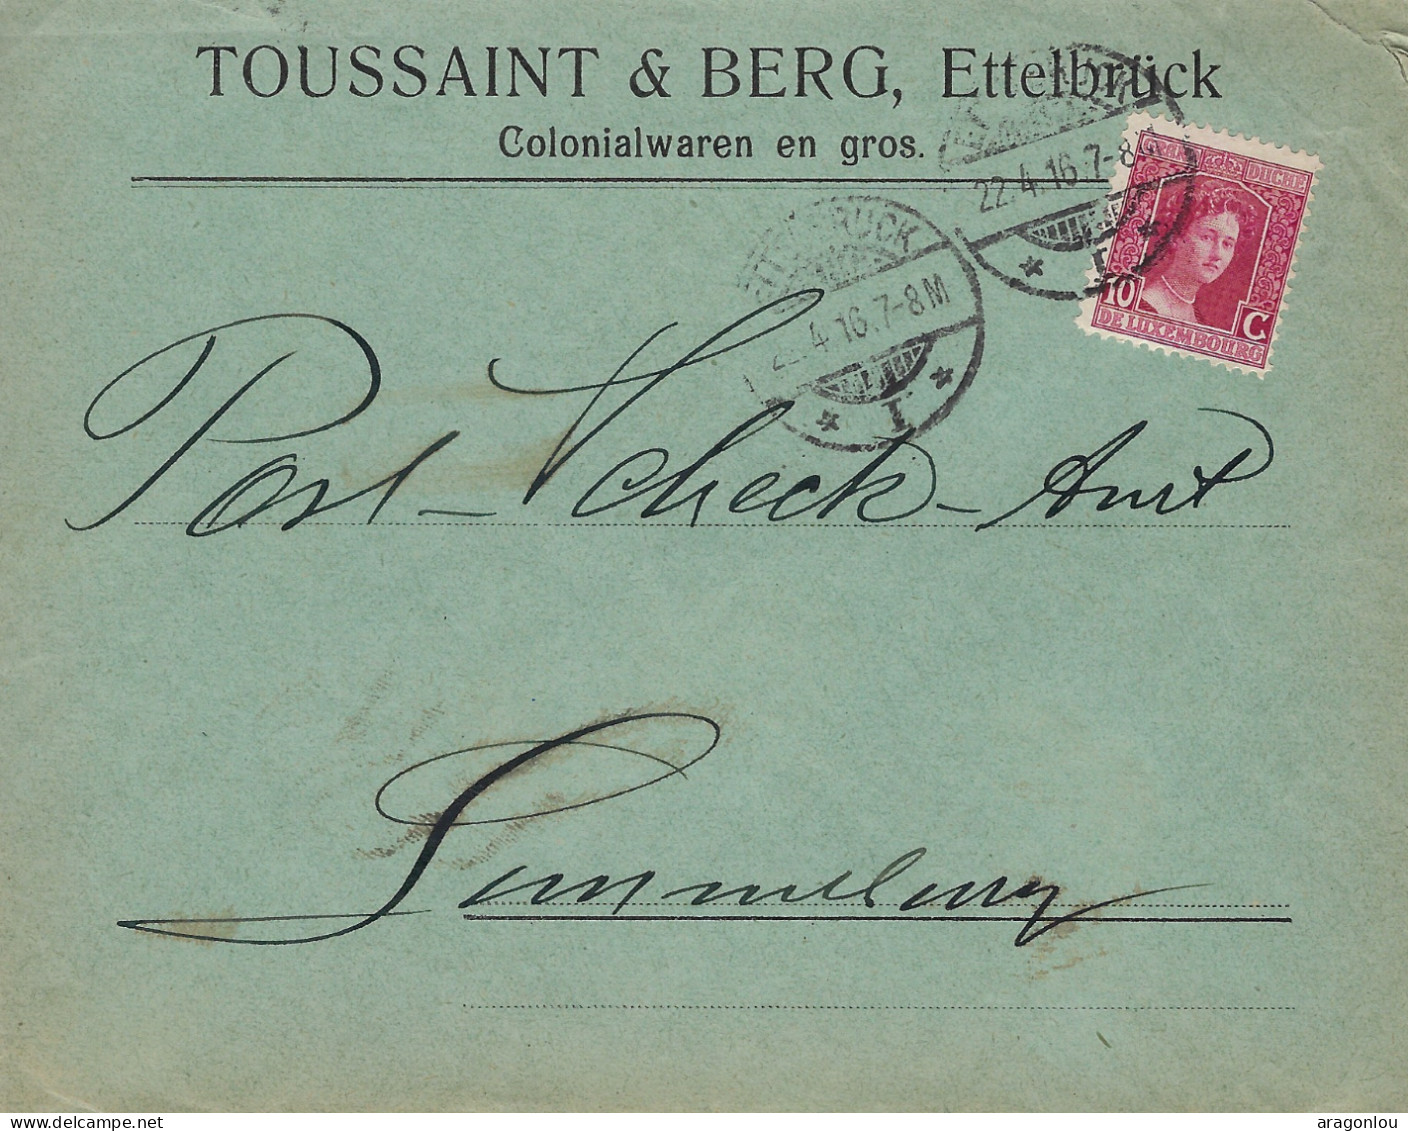 Luxembourg - Luxemburg - Lettre  1916  An Das Post -Scheck-Amt , Luxembourg- Cachet Luxembourg - Lettres & Documents